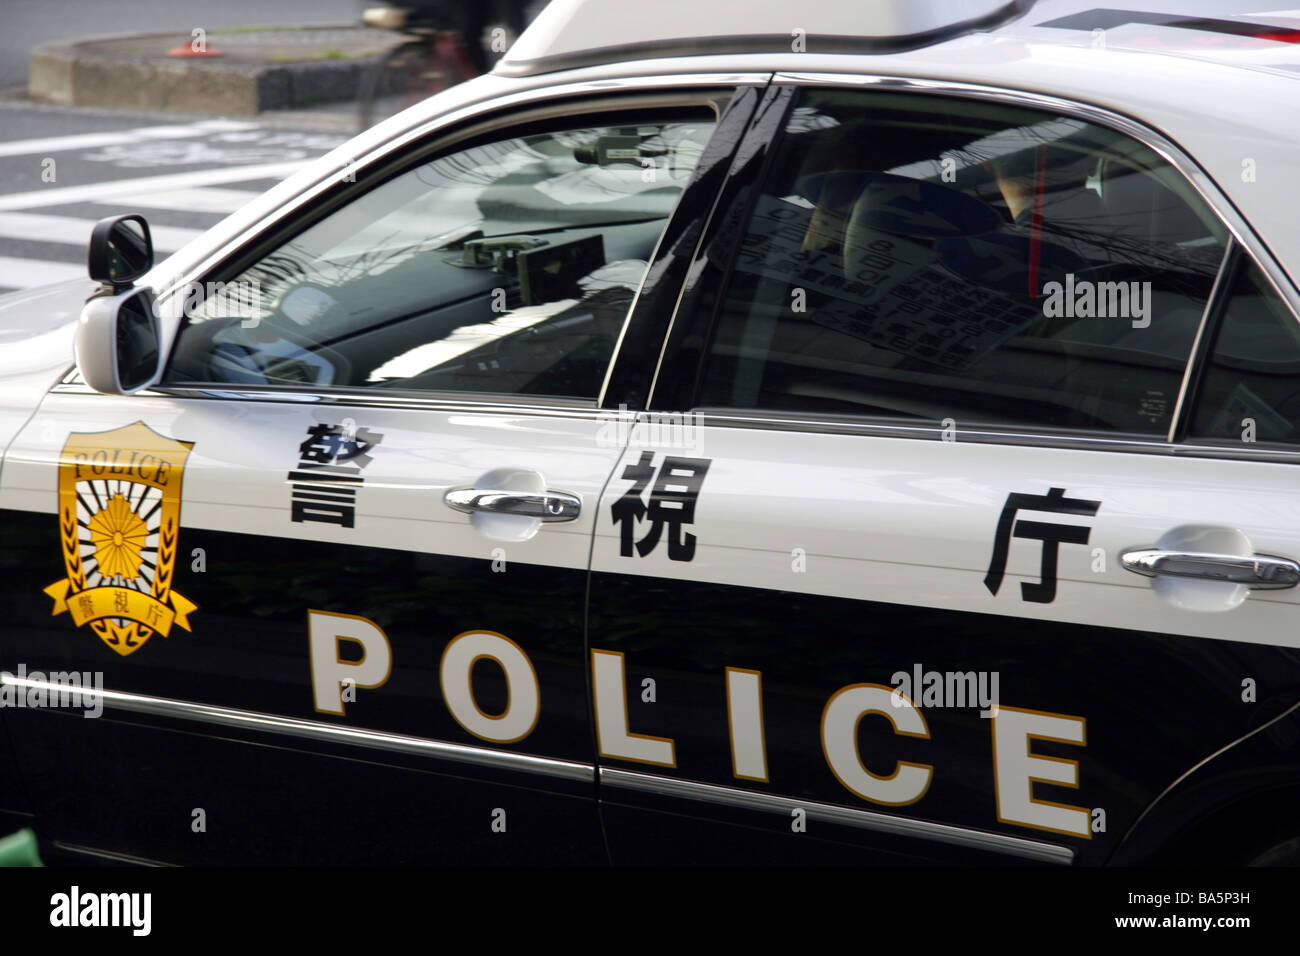 Police car in Tokyo Japan Stock Photo